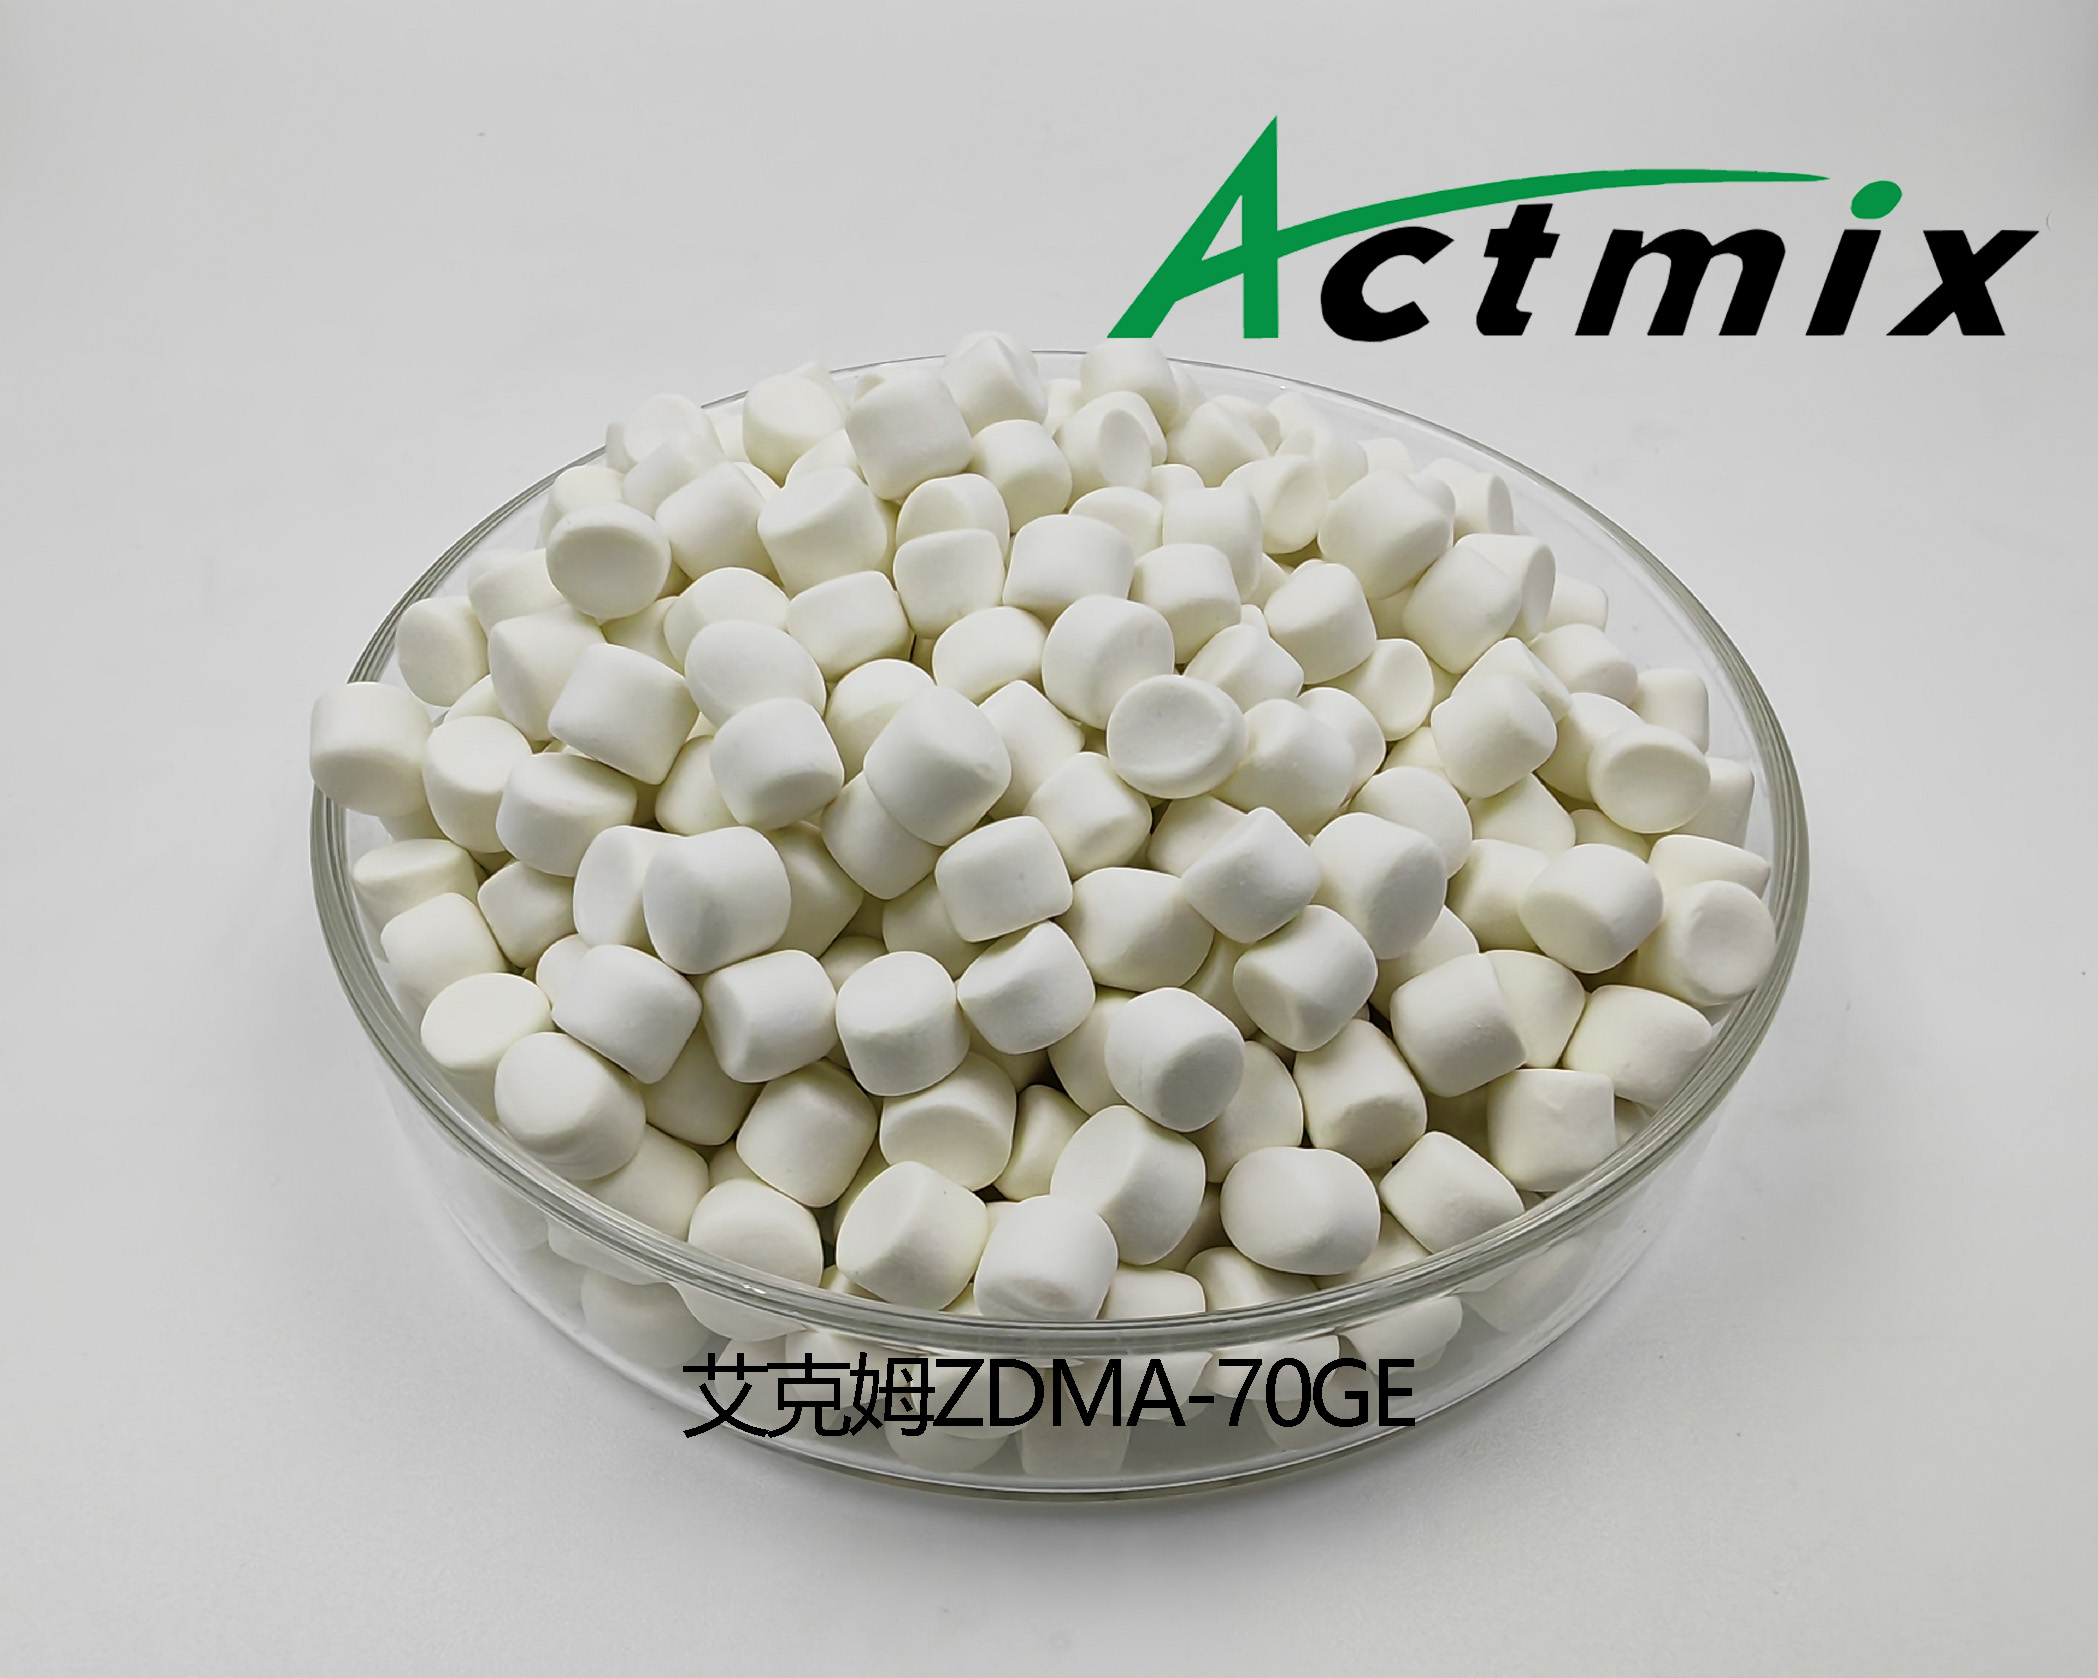 Actmix ZDMA-70GE